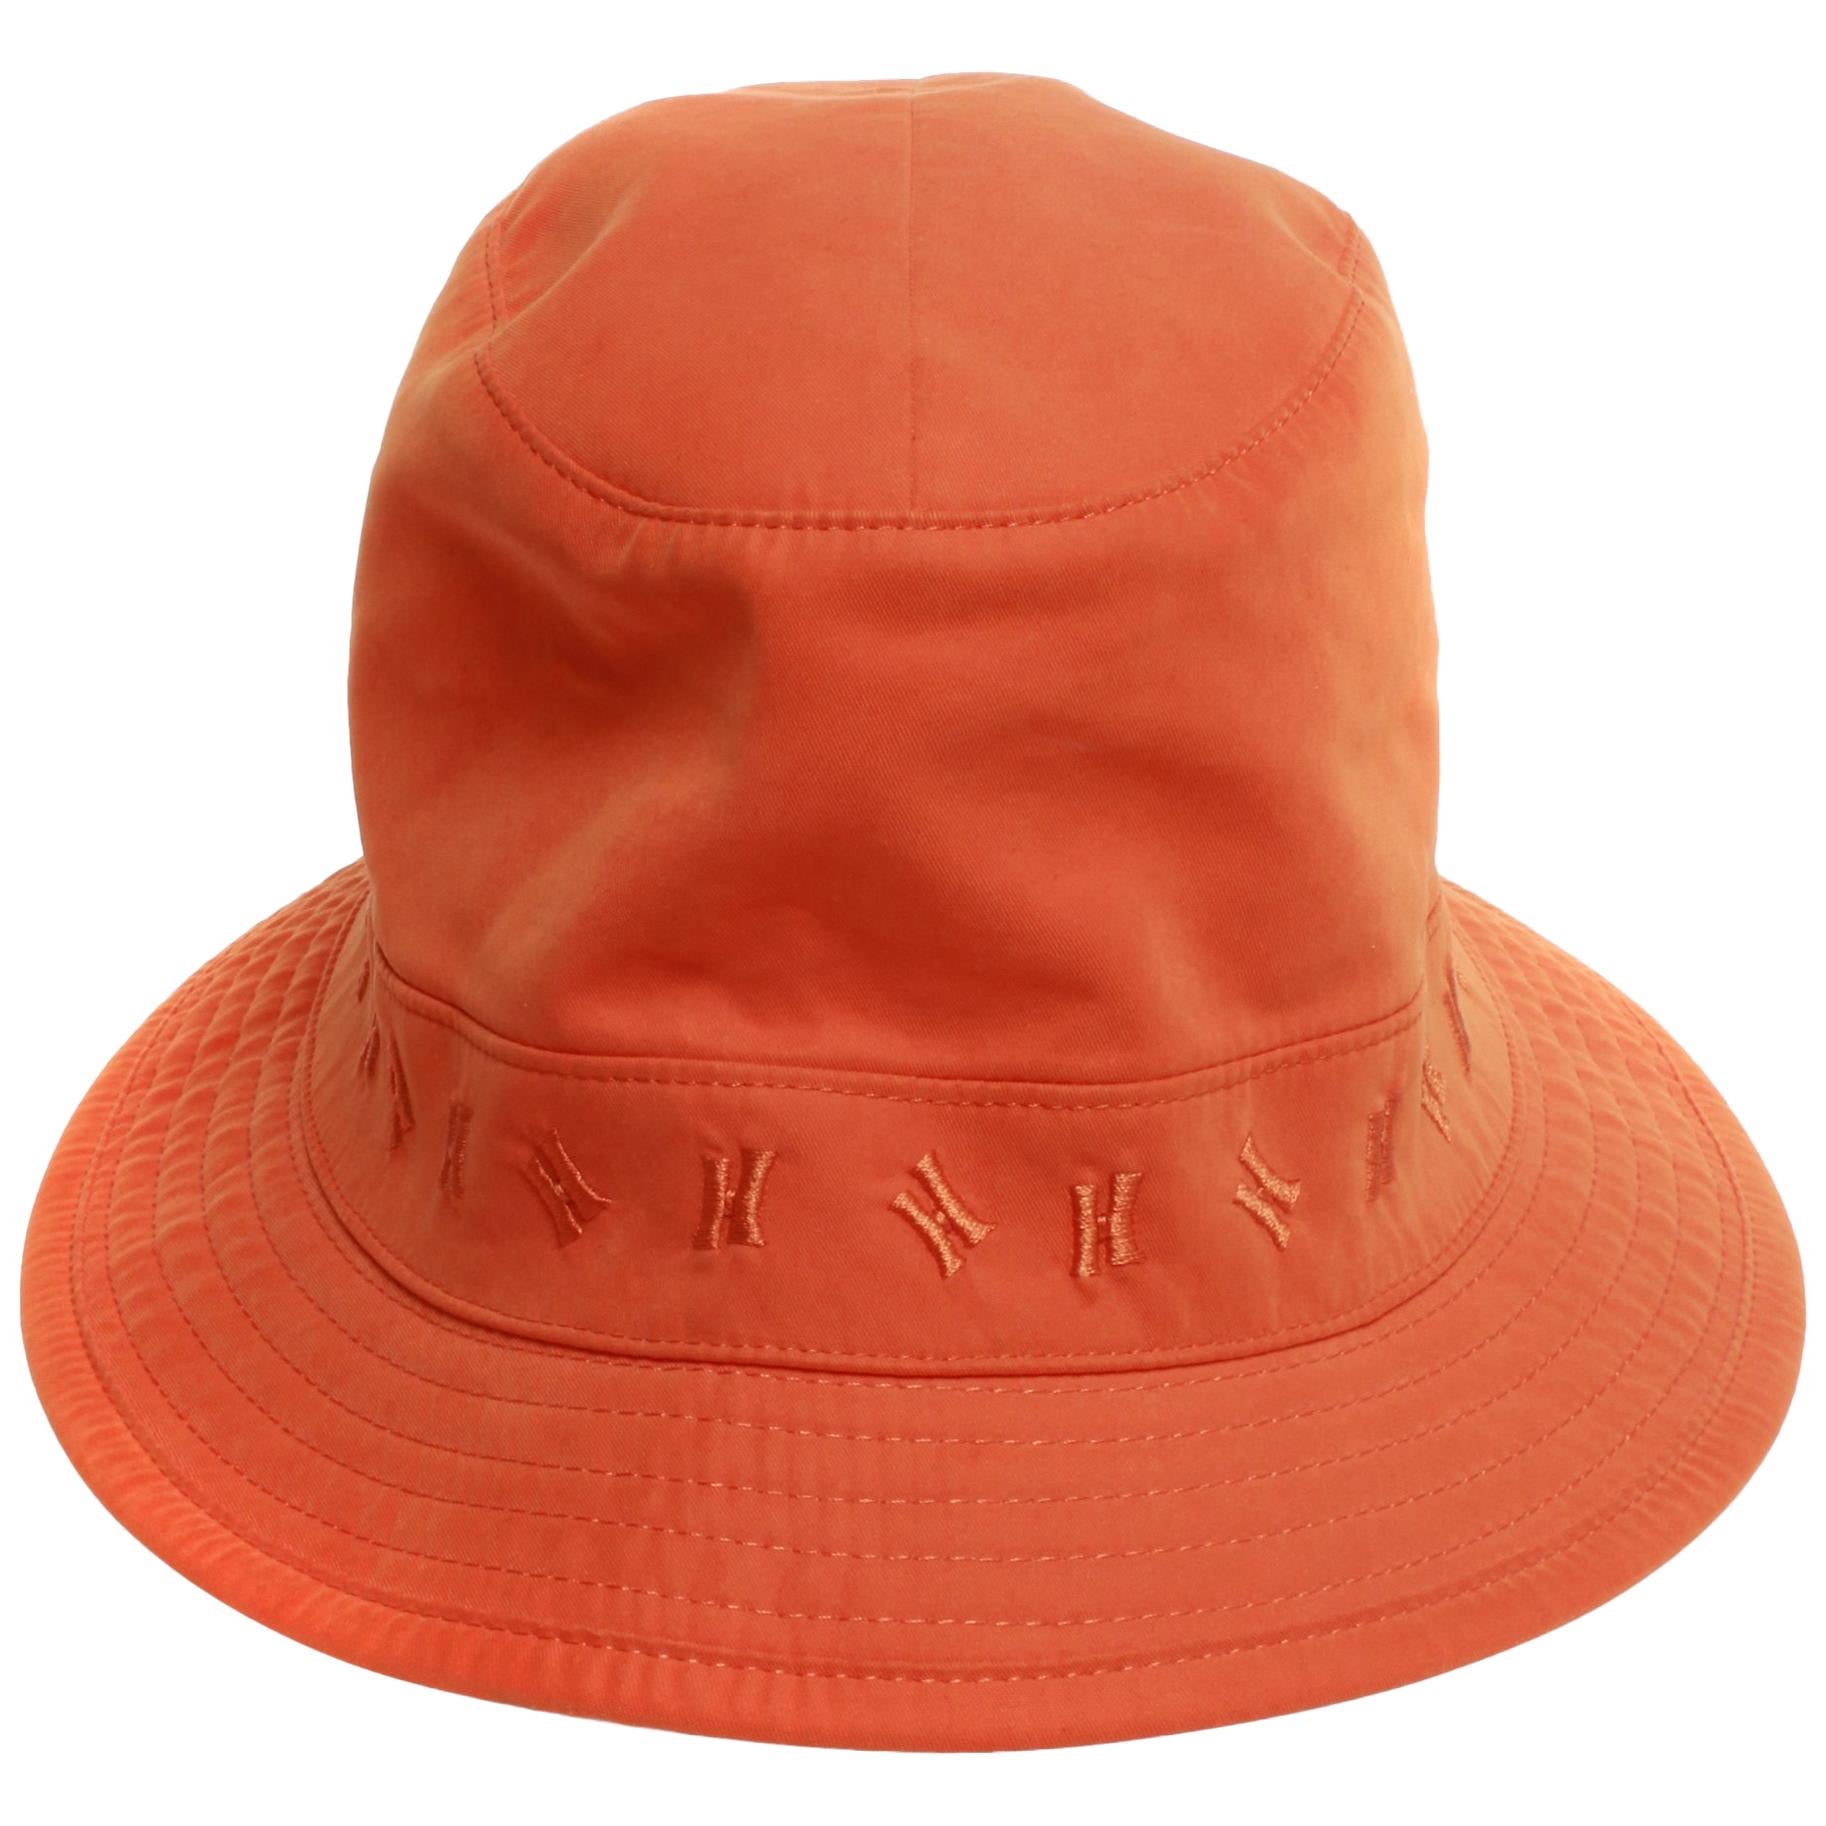 Hermes Orange Bucket Hat embroidered H logo around band